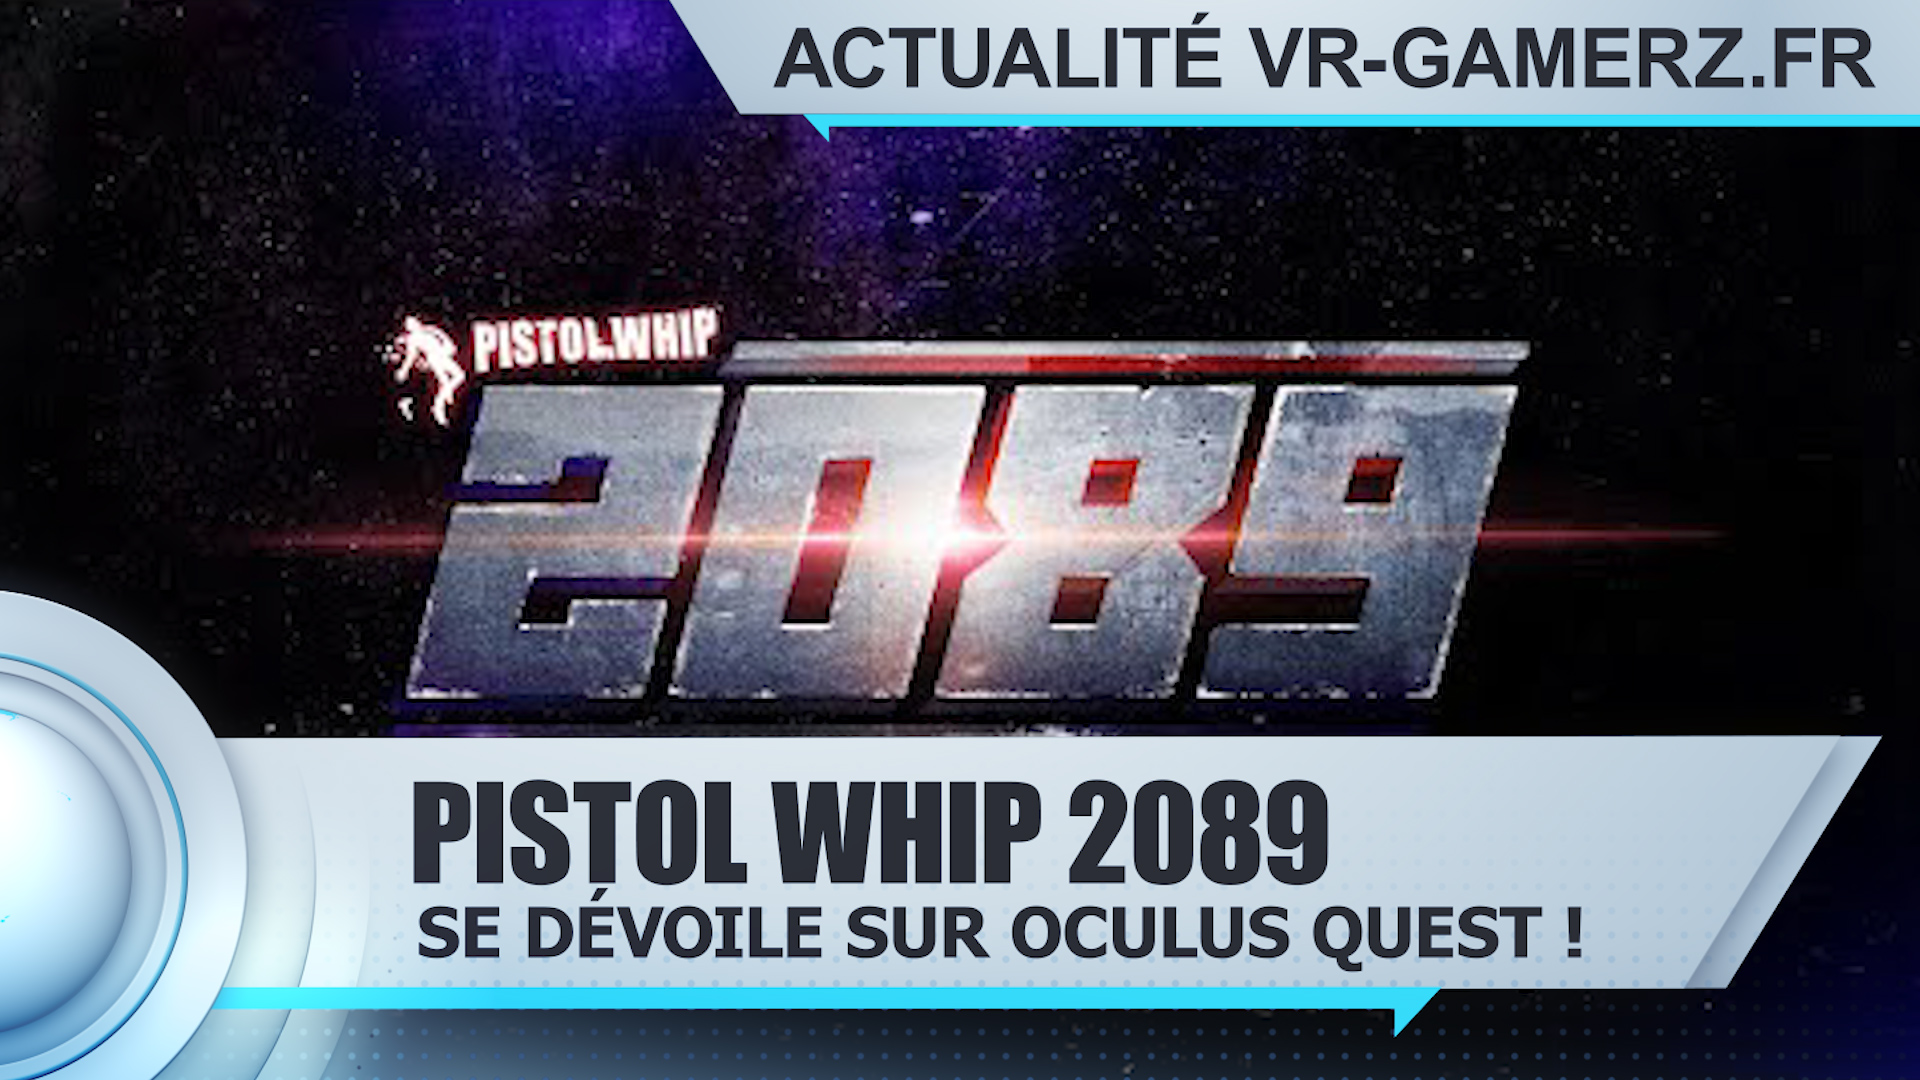 Pistol Whip 2089 Oculus quest : Découvrez le futur de Pistol Whip !